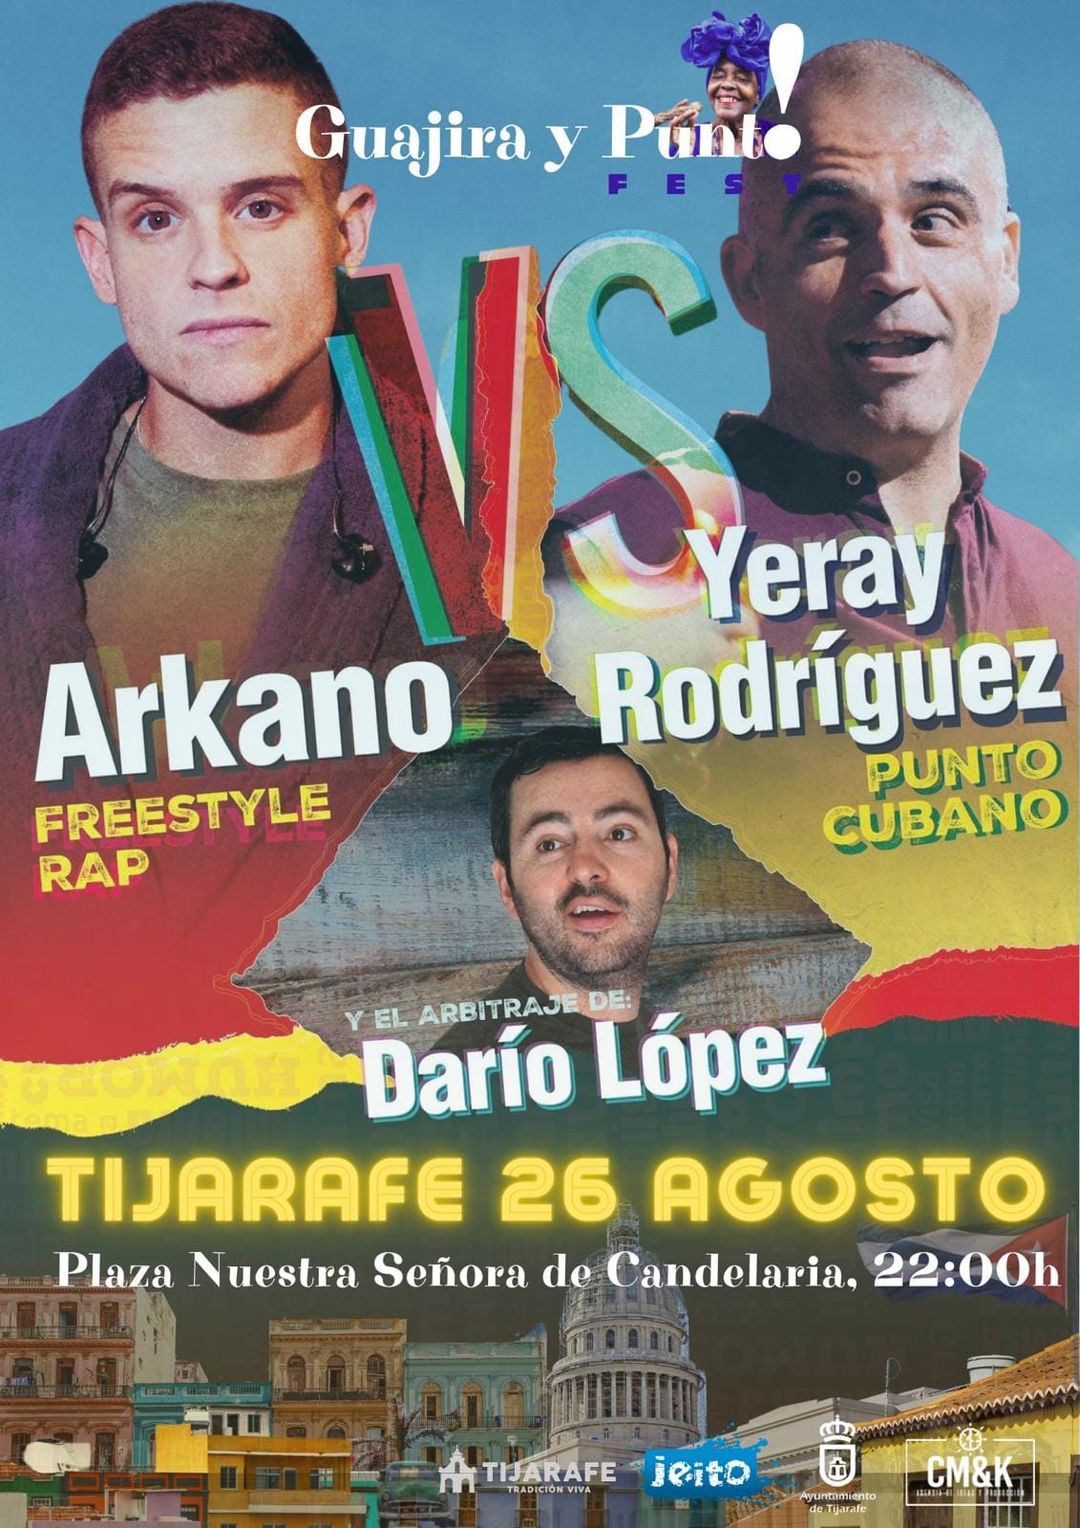 Guajira y Punto! Fest: Arkano vs. Yeray Rodríguez